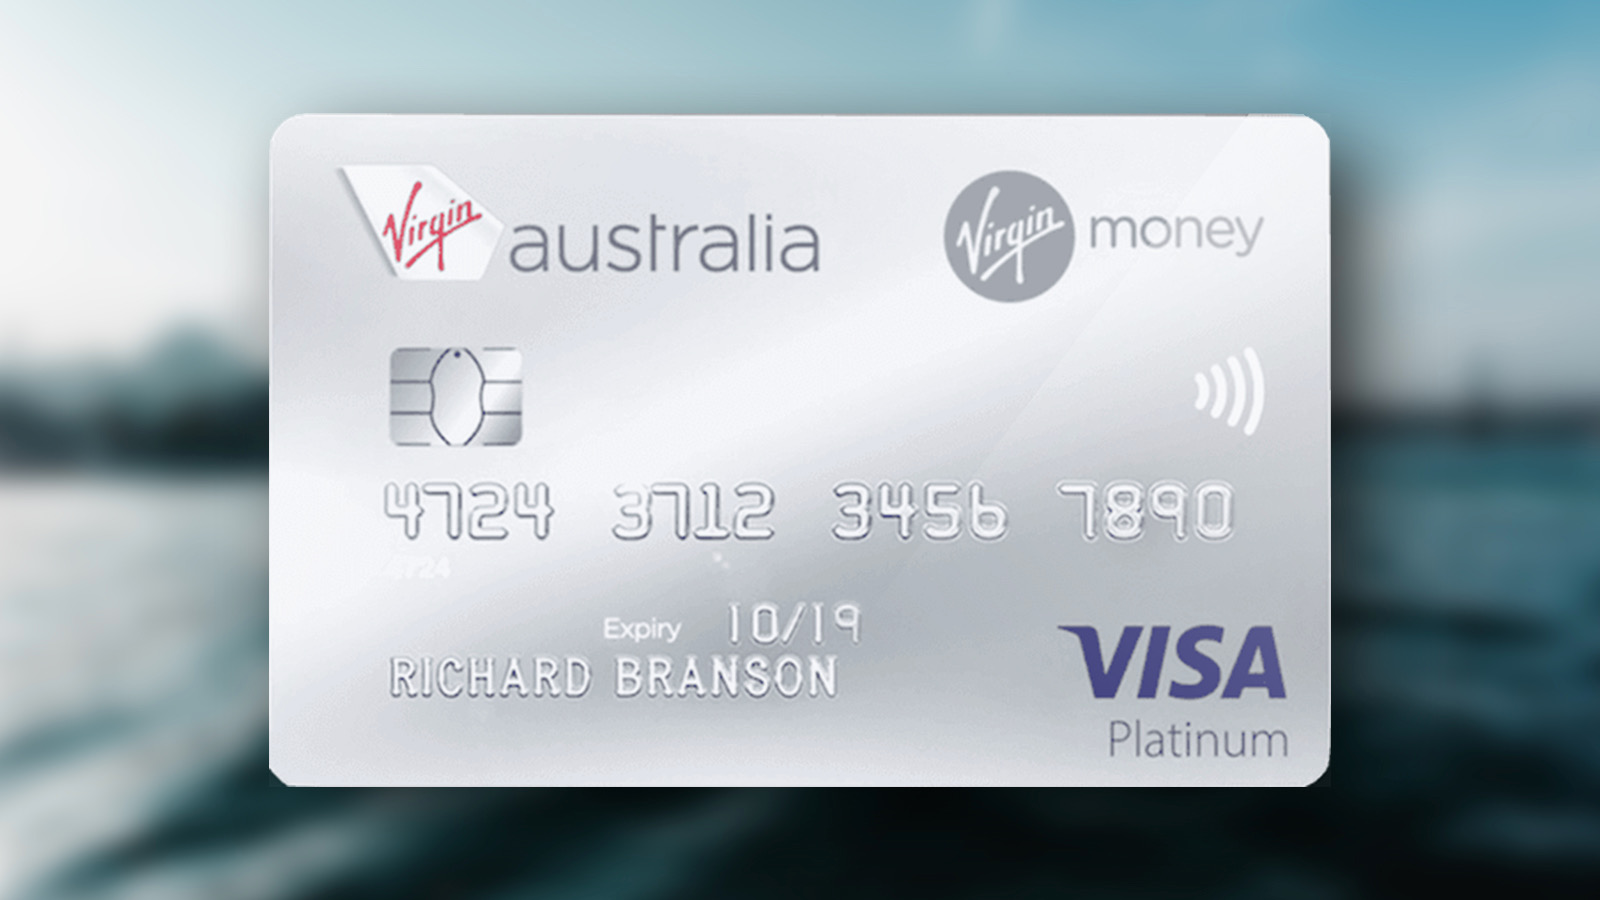 virgin australia travel money